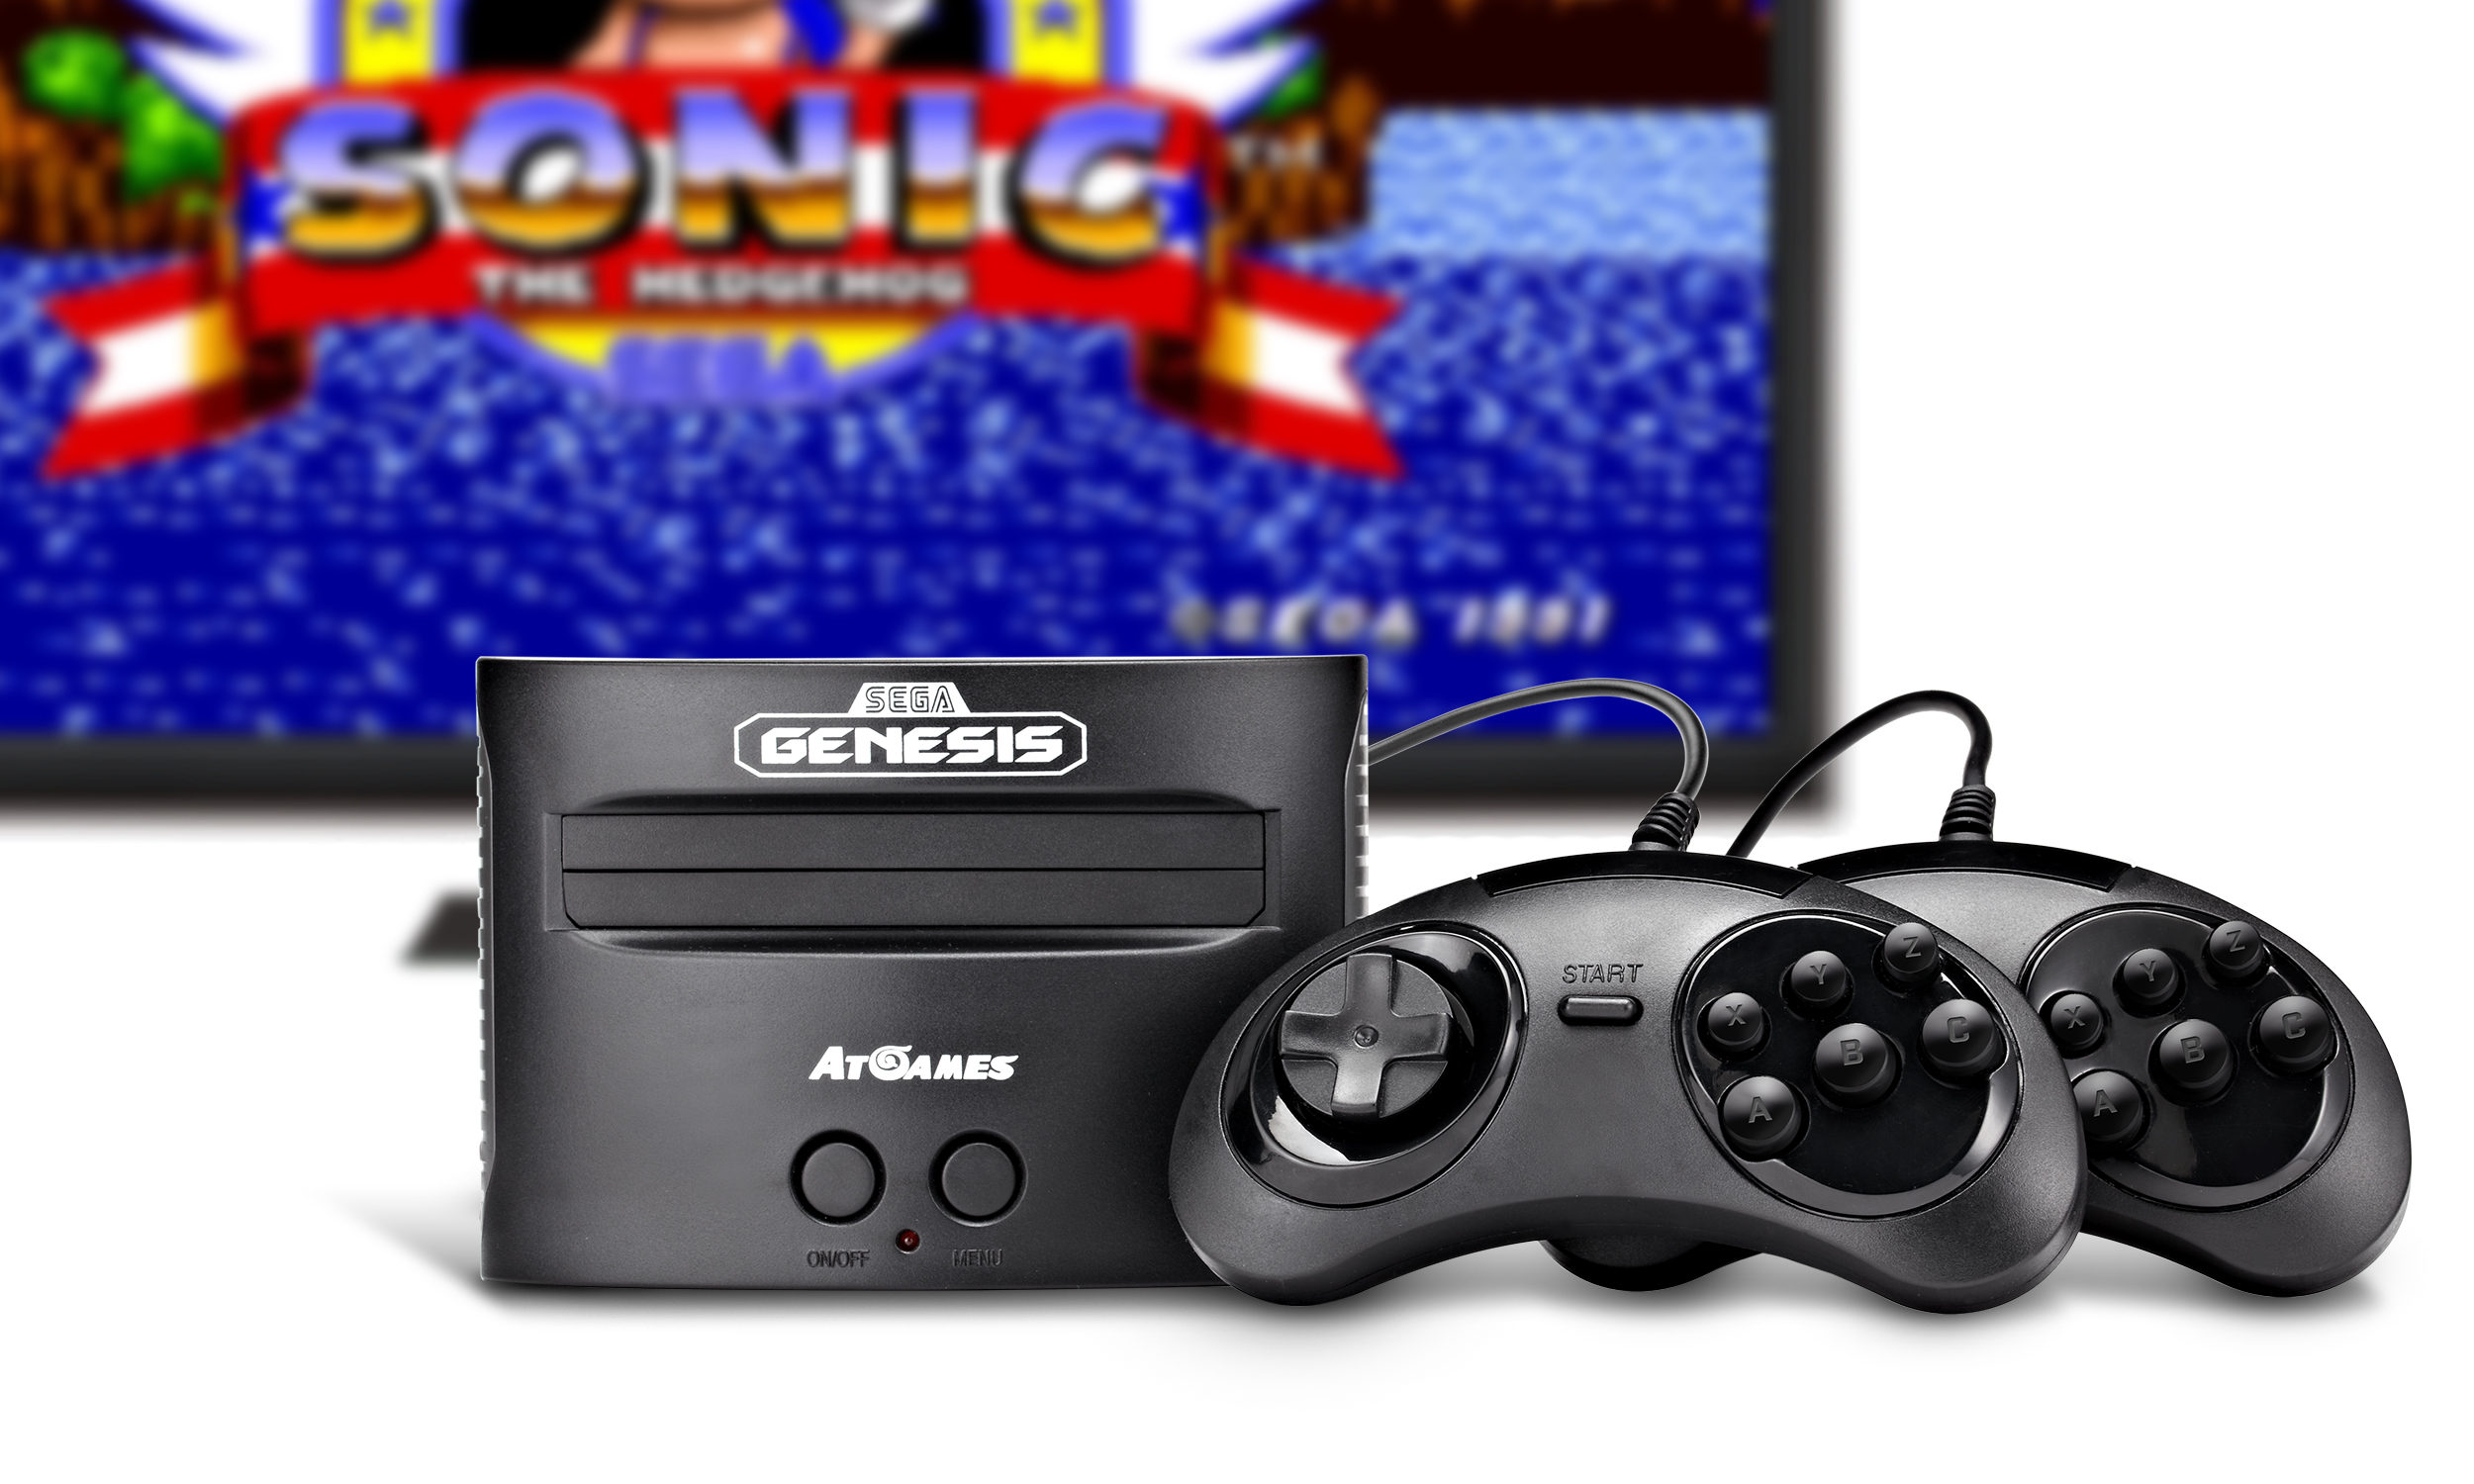 Сега генезис игры. Приставка Sega Genesis Atomis. Flashback Sega Genesis. Sega Genesis Console. Sega Genesis ATGAMES.